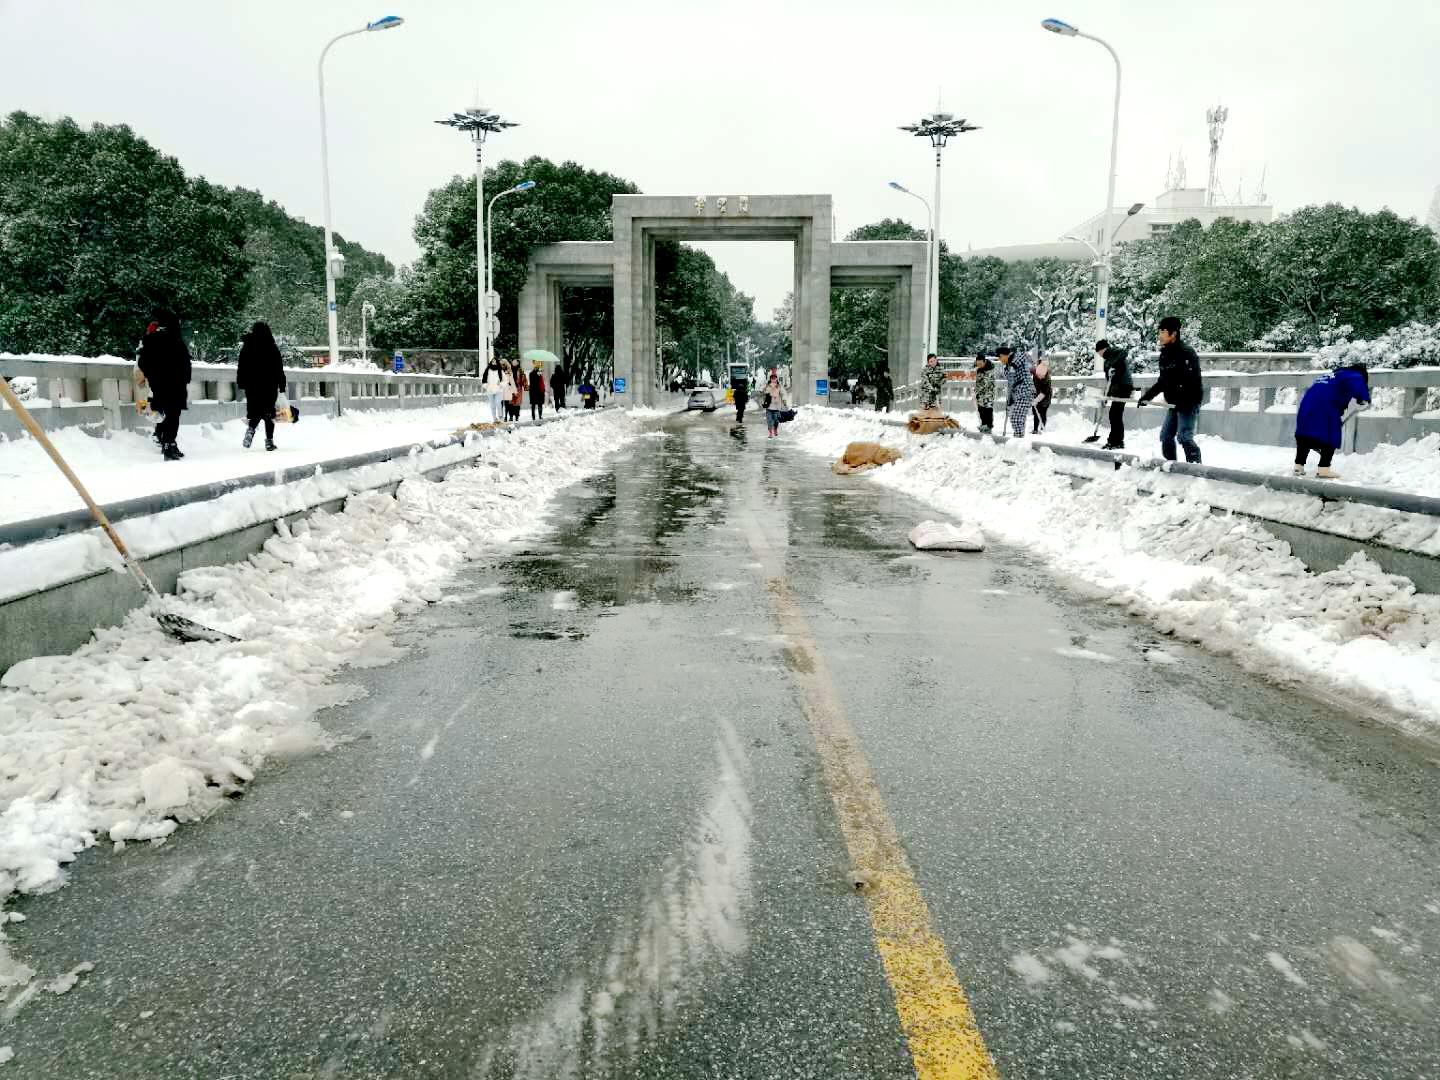 2008年中国雪灾